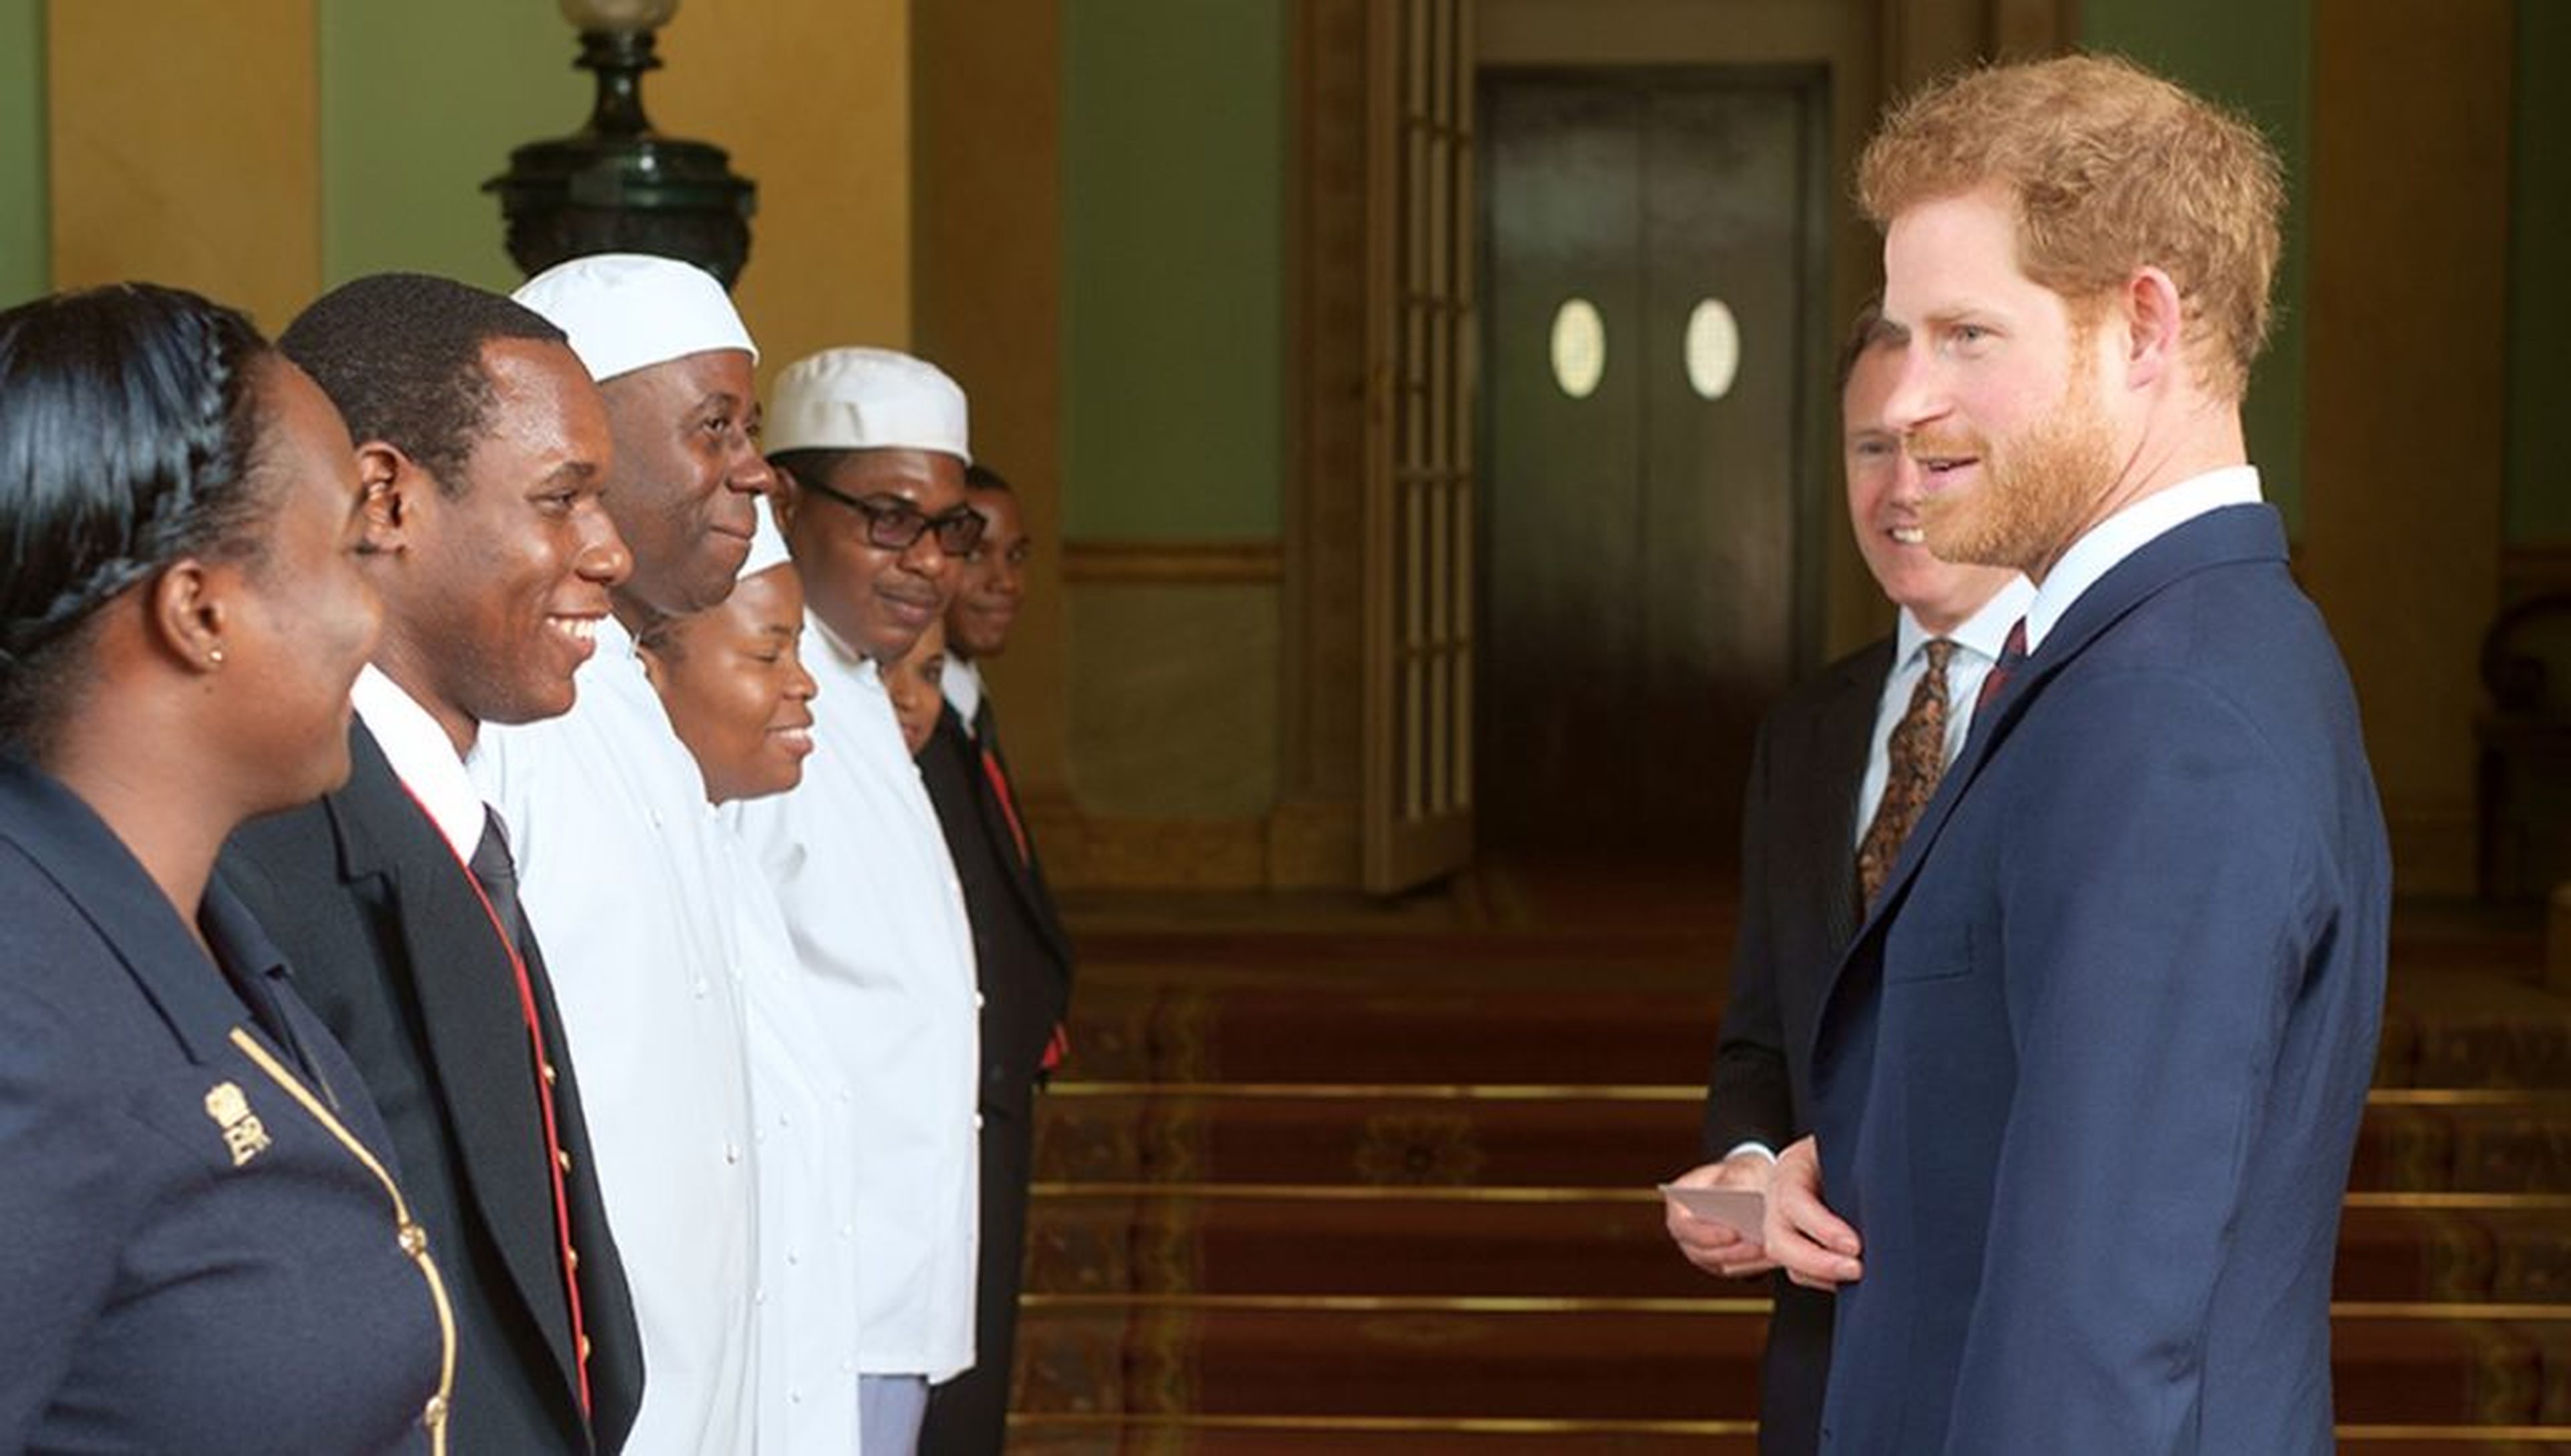 El príncipe Harry frente a parte del personal del Palacio de Buckingham.